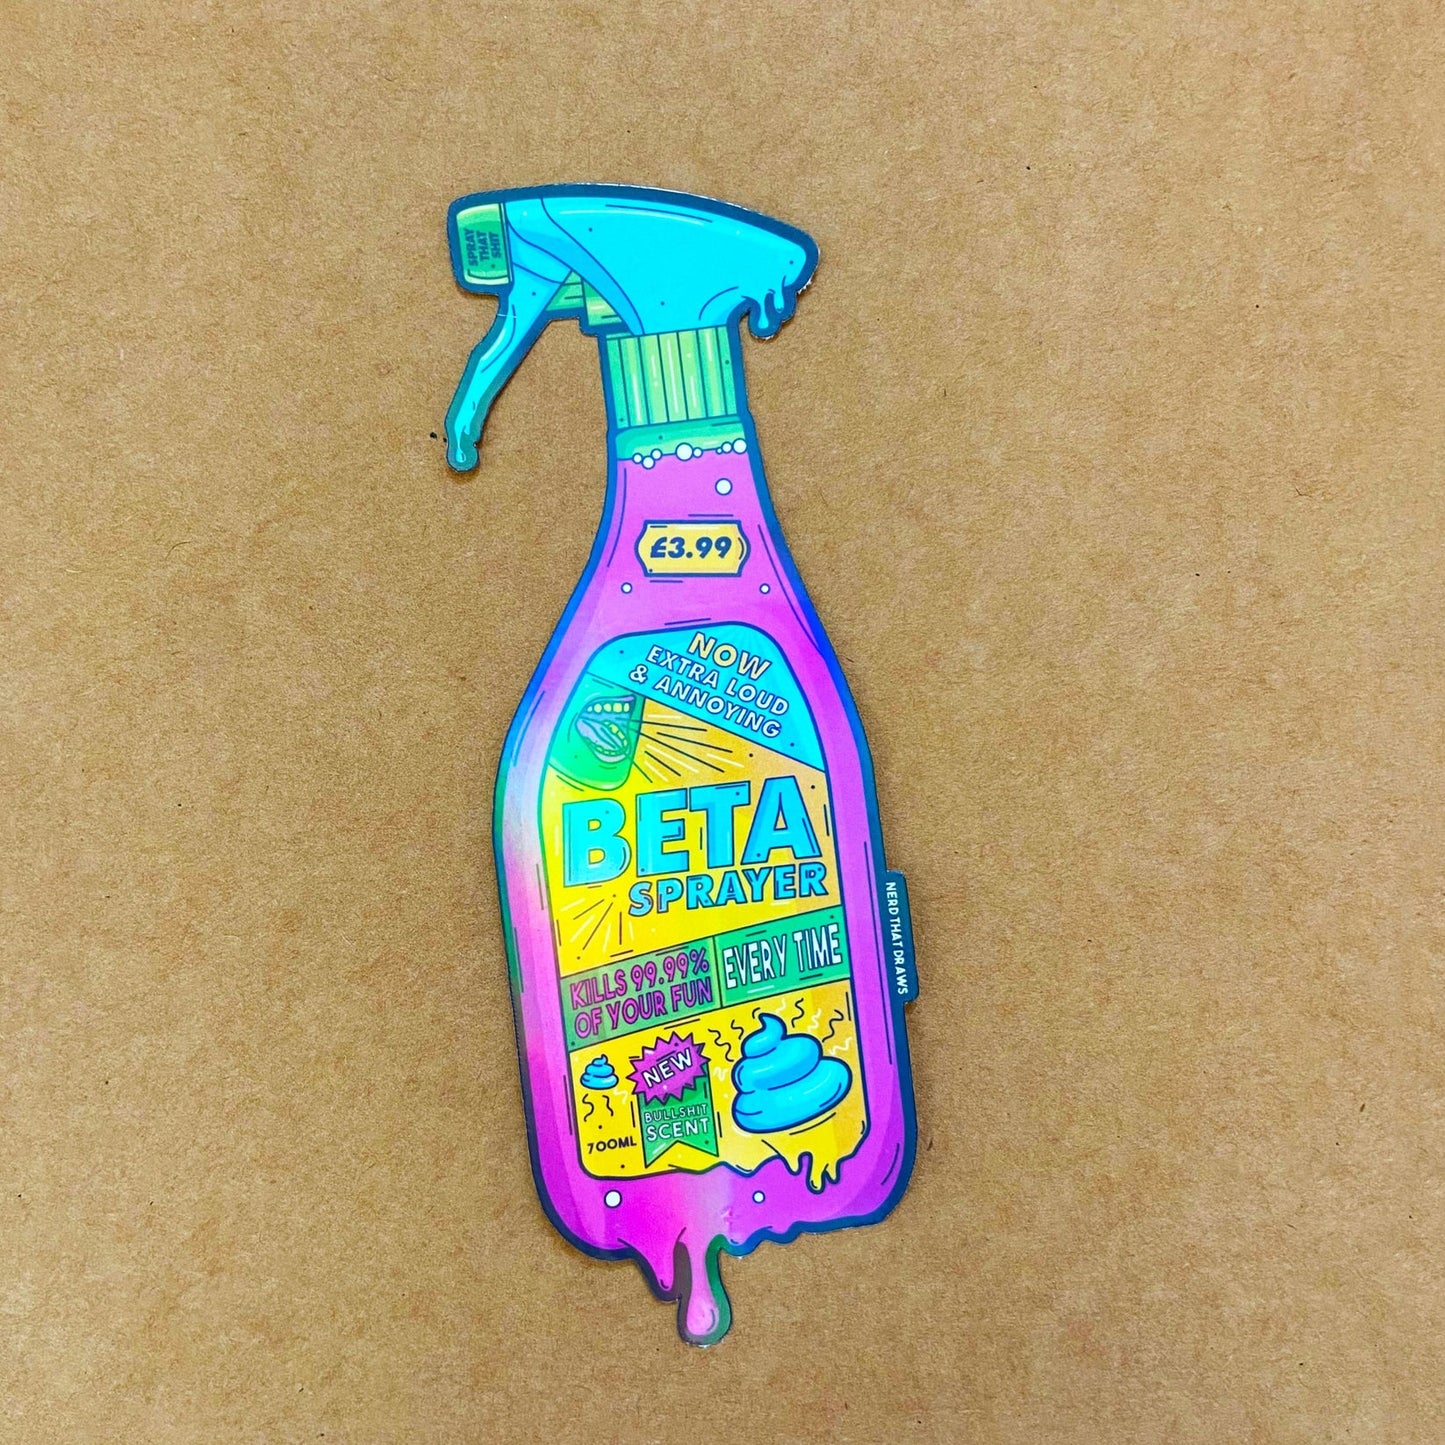 Nerd That Draws - Beta Spray Bottle - Holographic Sticker